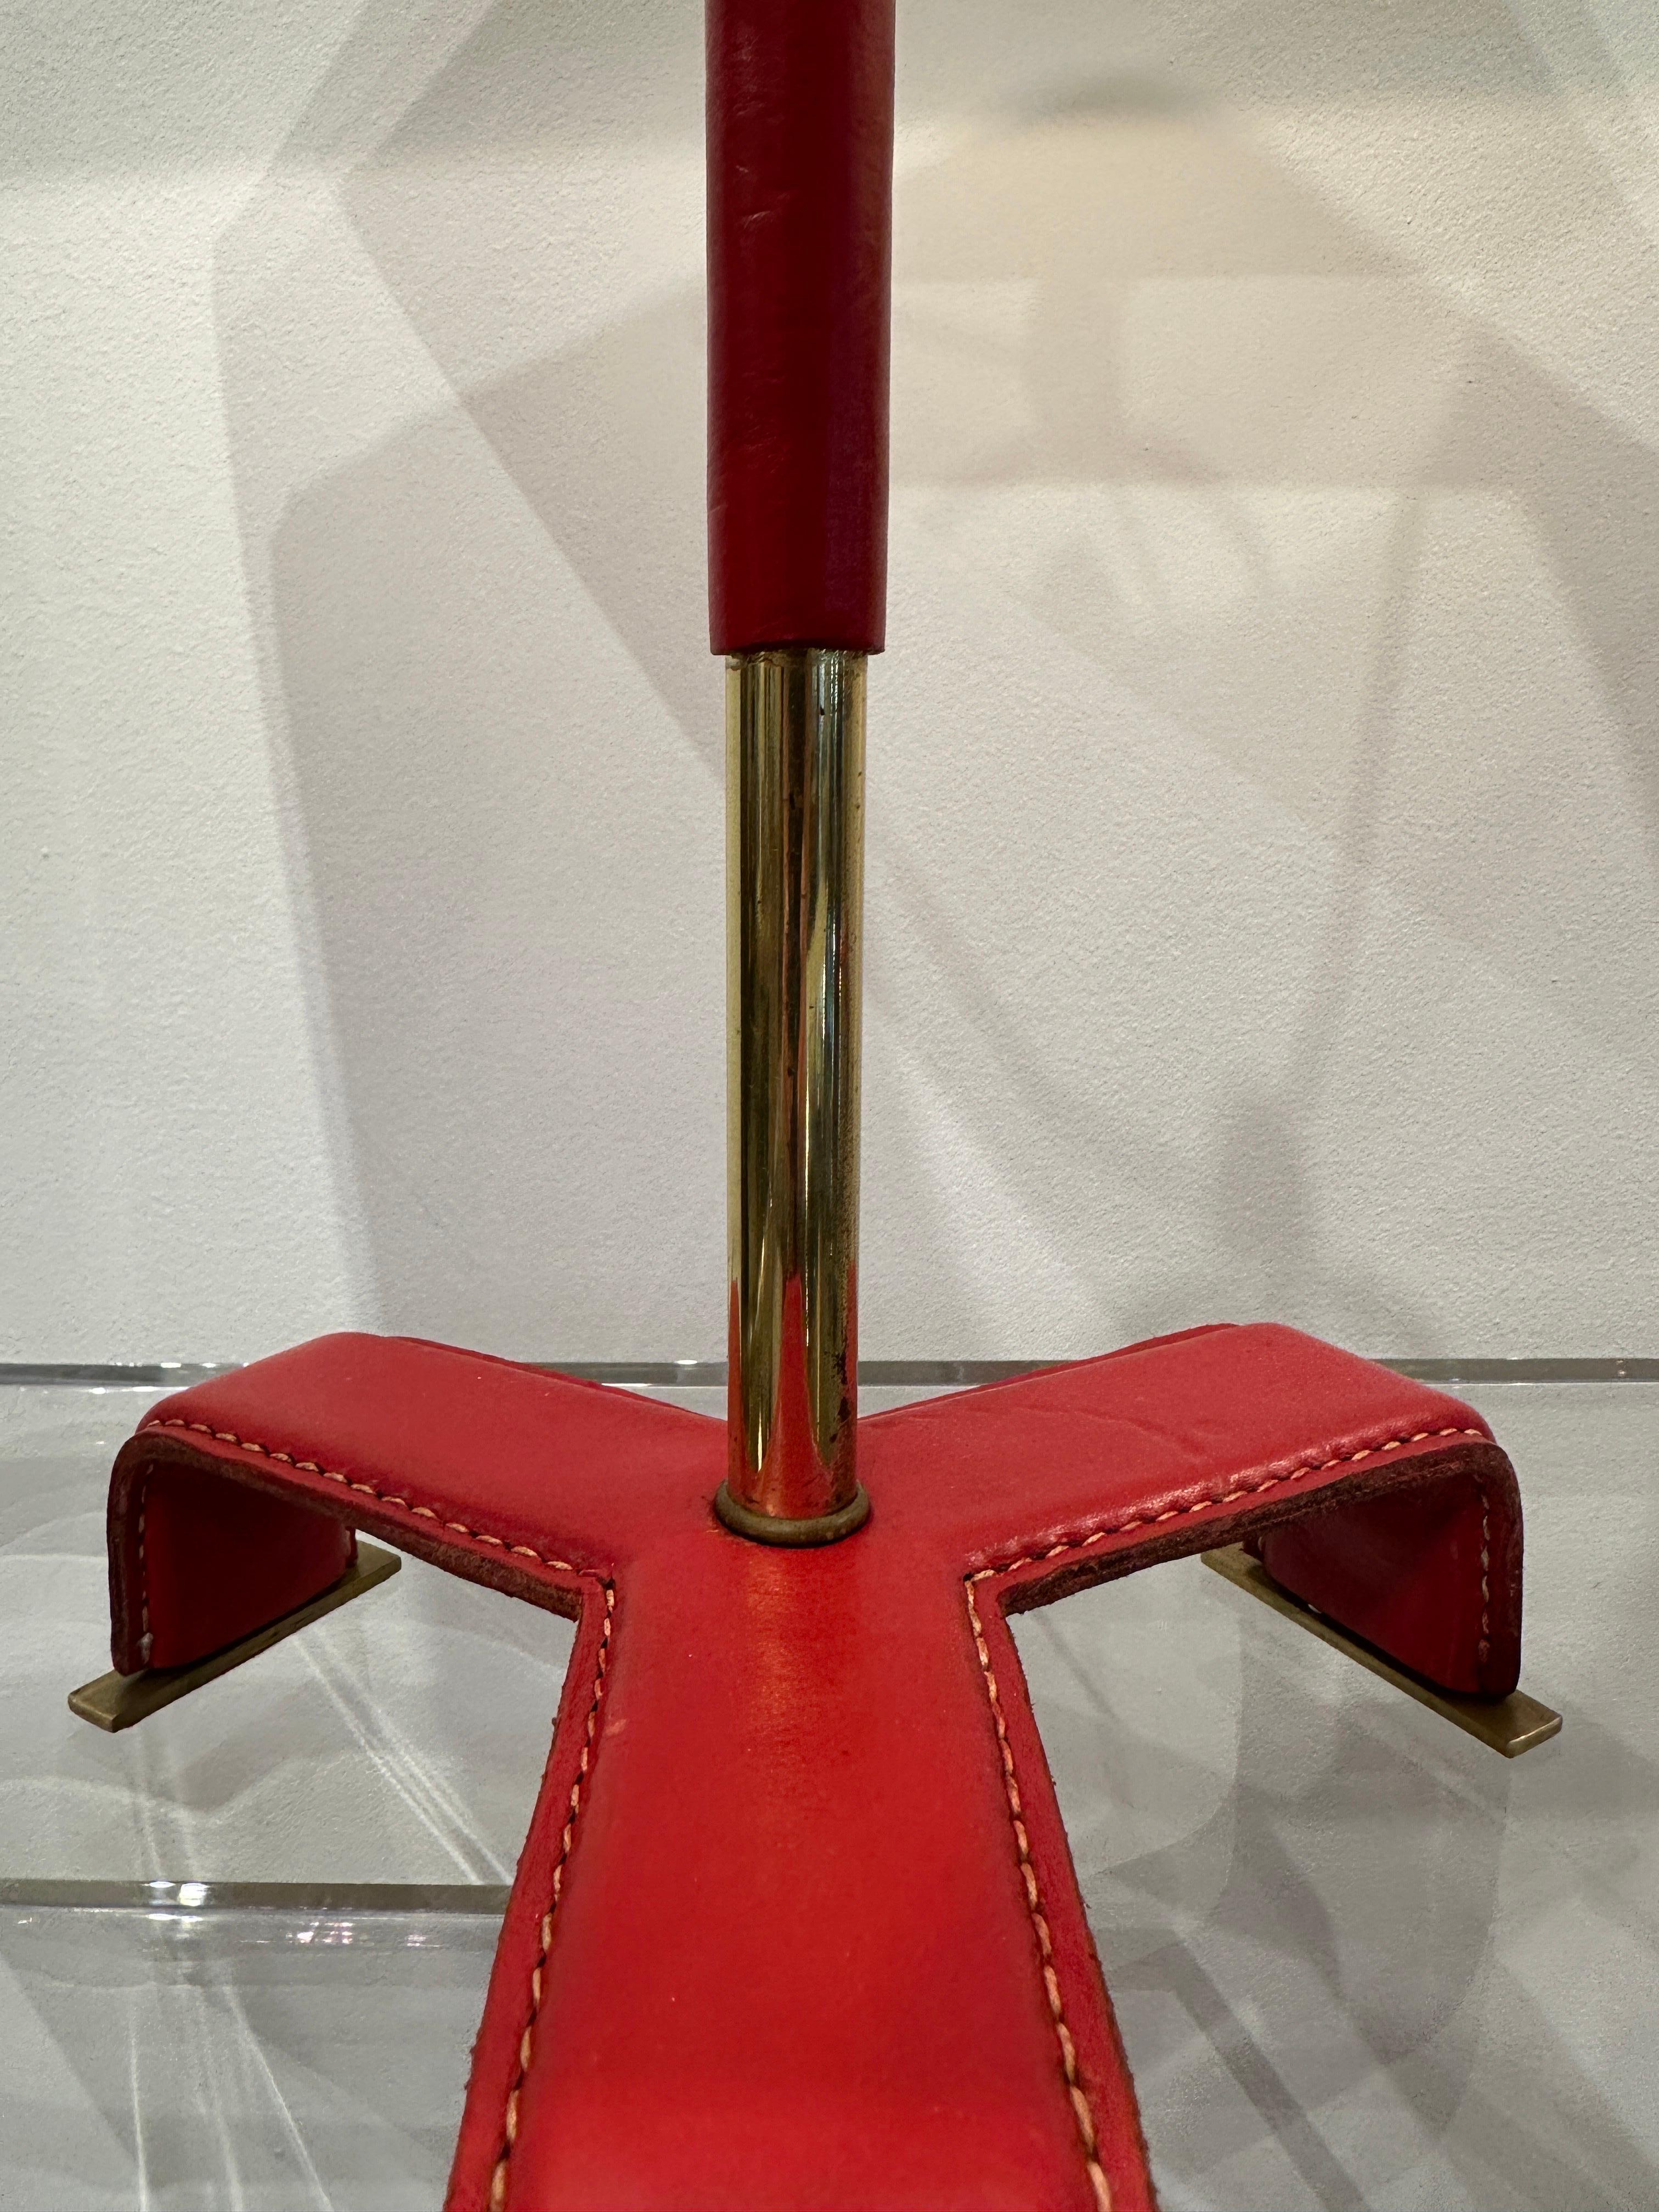 Ces lampes vintage en cuir rouge surpiqué, style Jacques Adnet, ont des pieds en forme de trépieds et une courroie en cuir sur le corps. Prise électrique, harpe, interrupteur et câblage de la soie entièrement mis à jour. Les abat-jours présentés